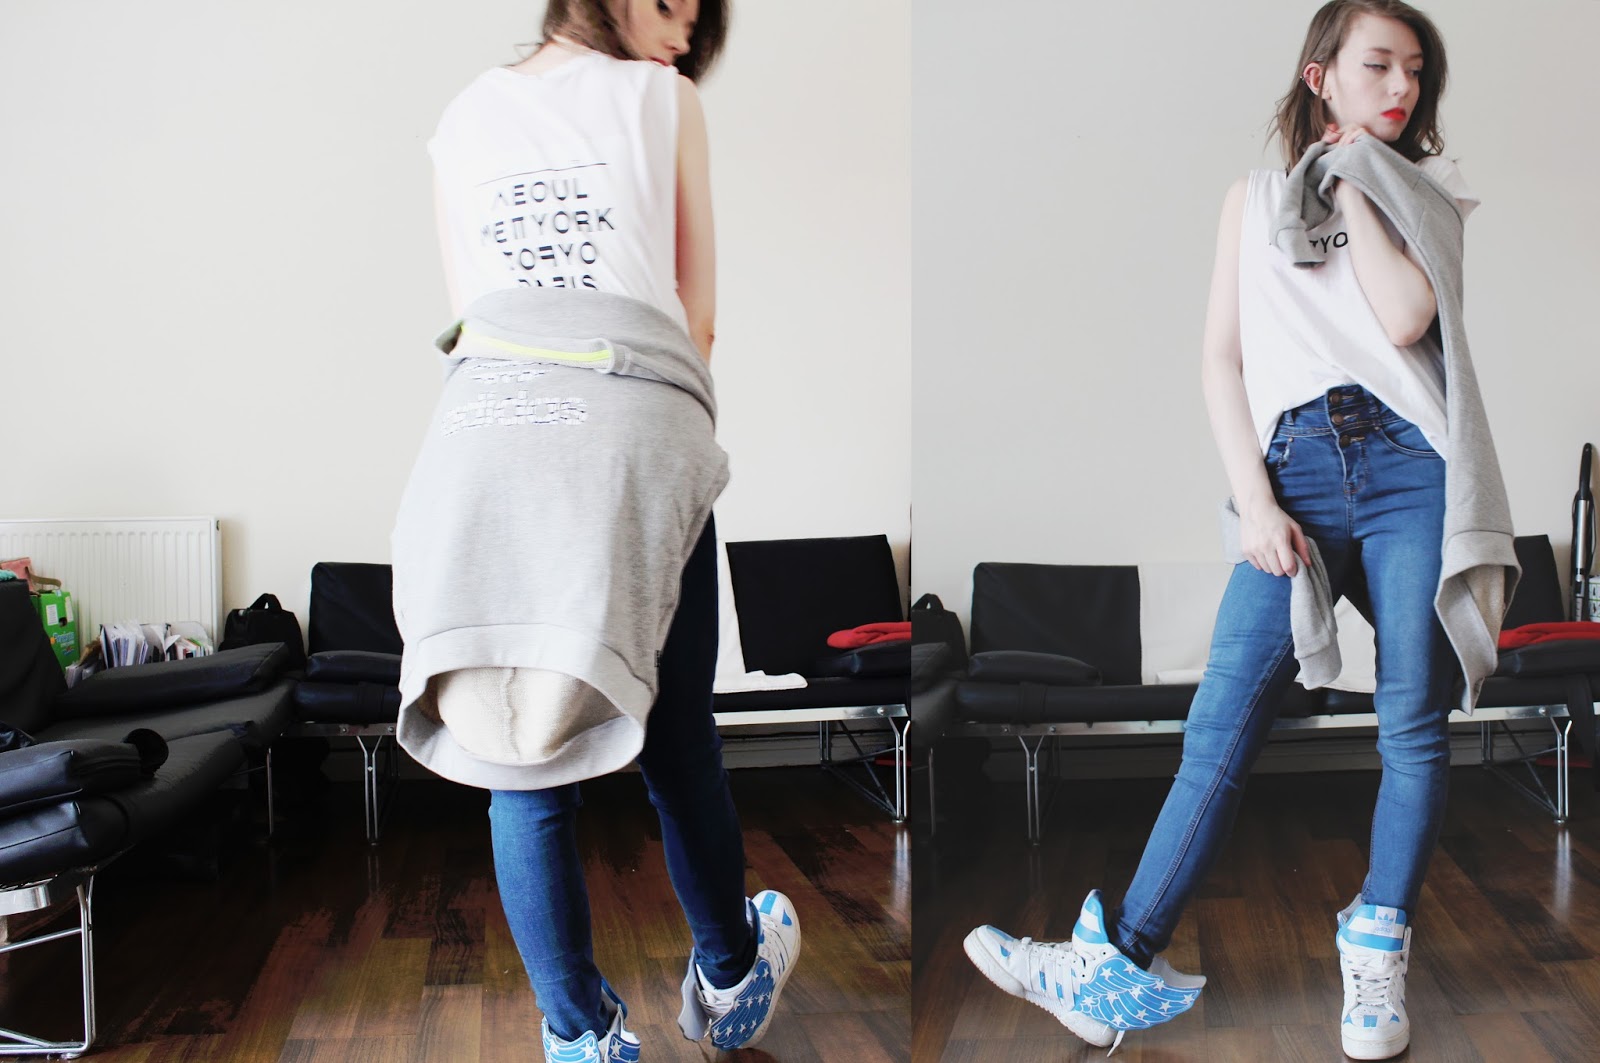 uk fashion blog adidas originals styled 4 ways